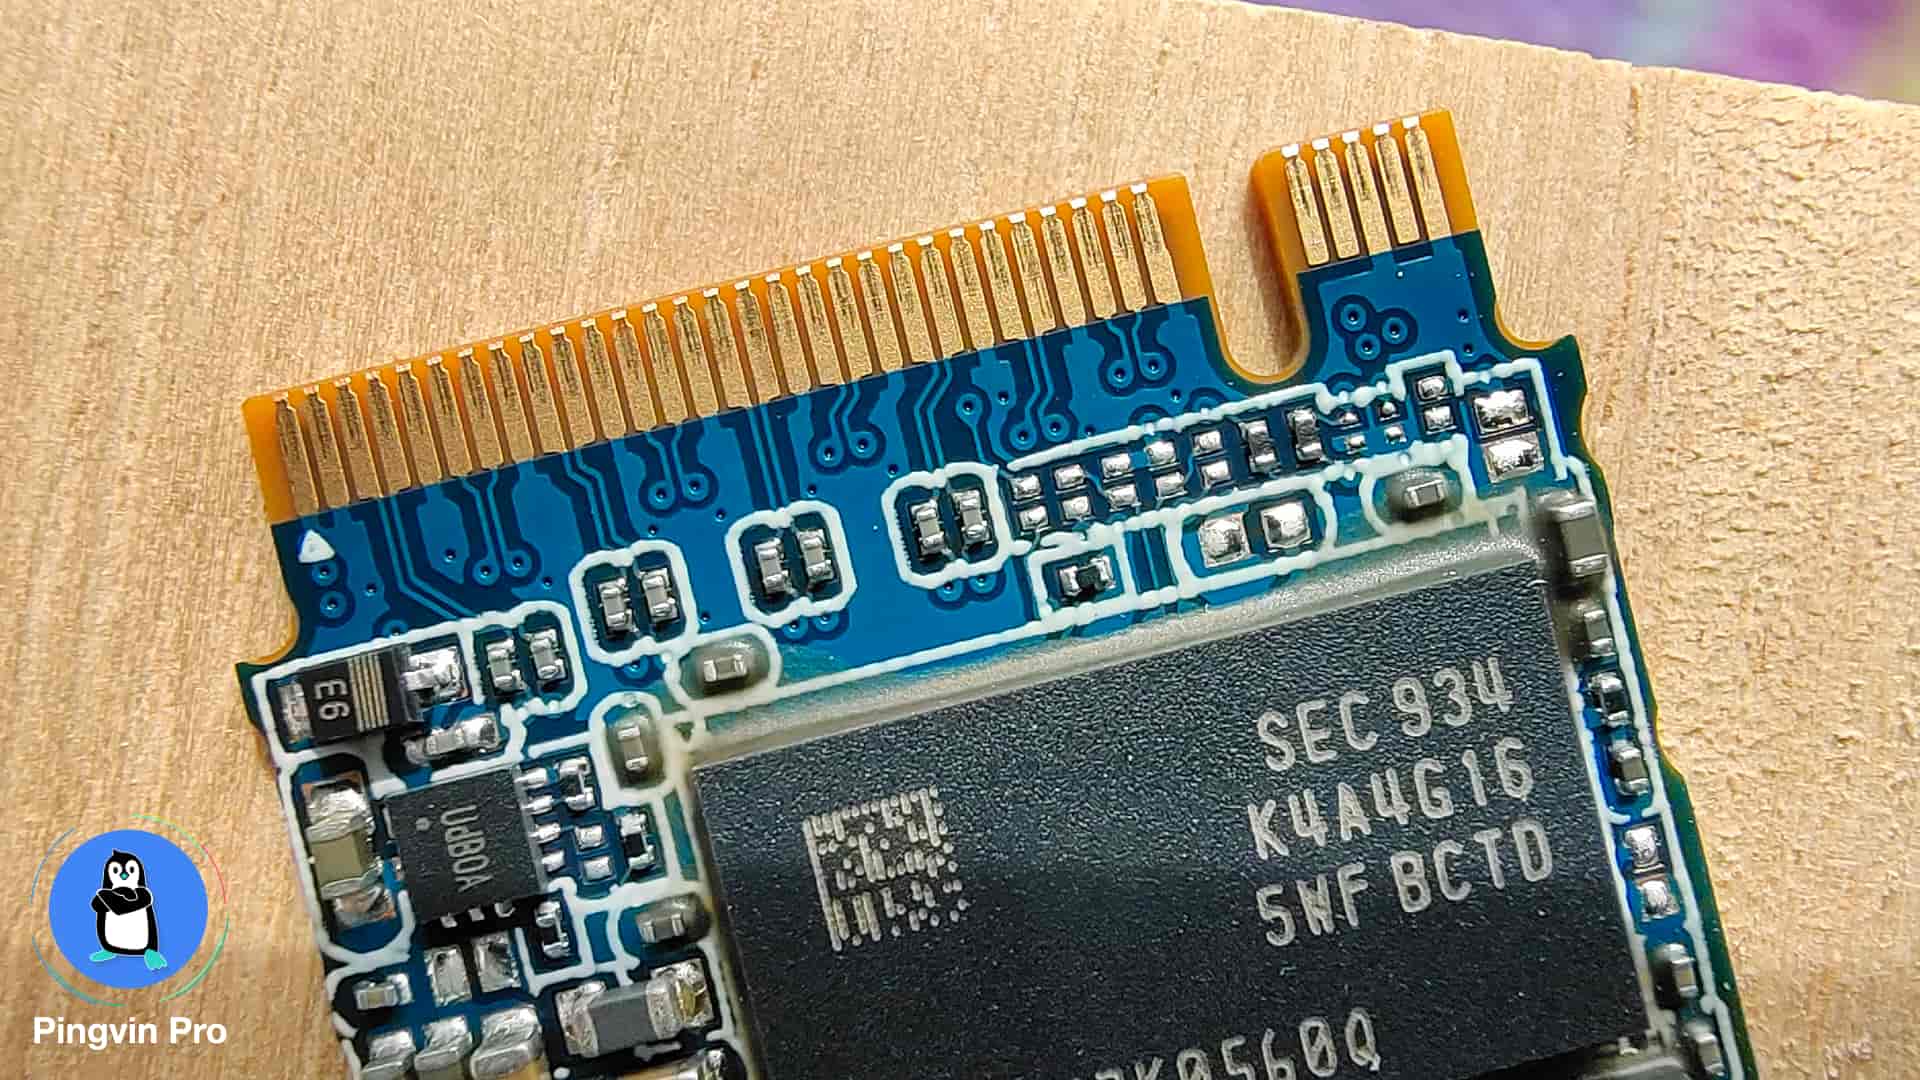 Kioxia Exceria SSD